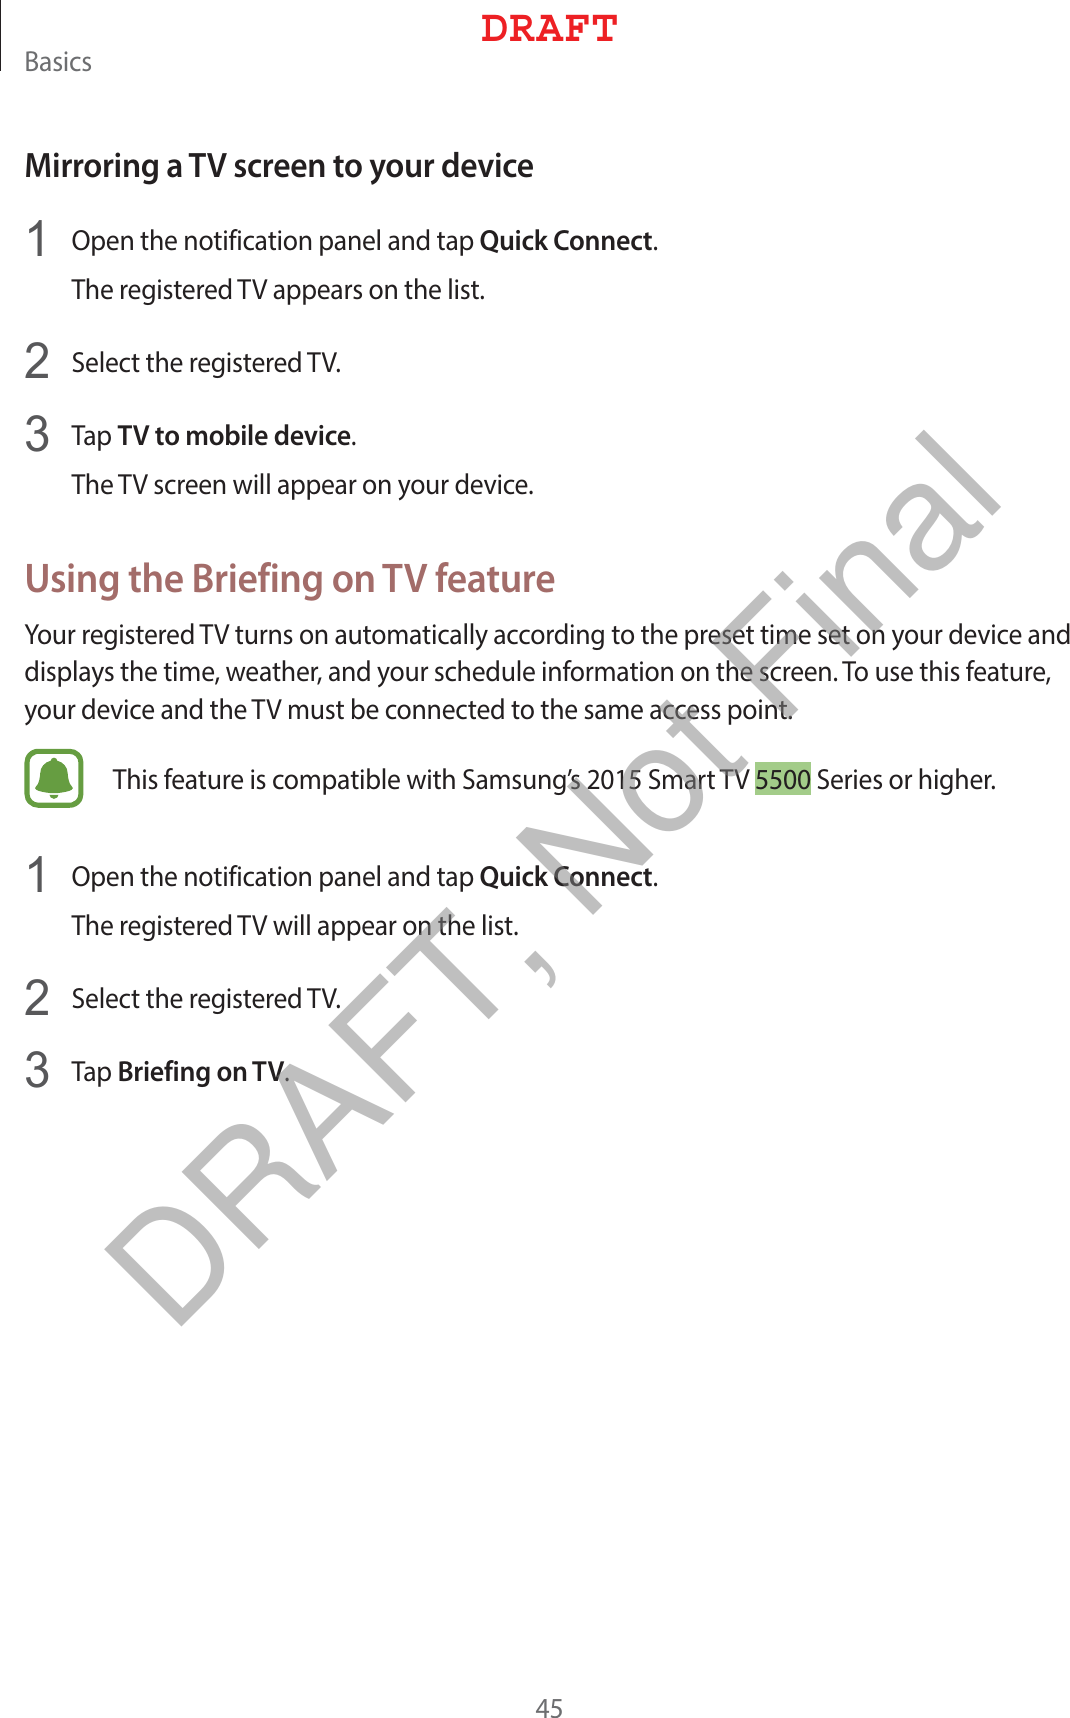 #BTJDTMirroring a TV screen to your device 0QFOUIFOPUJGJDBUJPOQBOFMBOEUBQQuick Connect5IFSFHJTUFSFE57BQQFBSTPOUIFMJTU 4FMFDUUIFSFHJTUFSFE57 5BQTV to mobile device5IF57TDSFFOXJMMBQQFBSPOZPVSEFWJDFUsing the Briefing on TV feature:PVSSFHJTUFSFE57UVSOTPOBVUPNBUJDBMMZBDDPSEJOHUPUIFQSFTFUUJNFTFUPOZPVSEFWJDFBOEEJTQMBZTUIFUJNFXFBUIFSBOEZPVSTDIFEVMFJOGPSNBUJPOPOUIFTDSFFO5PVTFUIJTGFBUVSFZPVSEFWJDFBOEUIF57NVTUCFDPOOFDUFEUPUIFTBNFBDDFTTQPJOU5IJTGFBUVSFJTDPNQBUJCMFXJUI4BNTVOHT4NBSU574FSJFTPSIJHIFS 0QFOUIFOPUJGJDBUJPOQBOFMBOEUBQQuick Connect5IFSFHJTUFSFE57XJMMBQQFBSPOUIFMJTU 4FMFDUUIFSFHJTUFSFE57 5BQBriefing on TV%3&quot;&apos;5DRAFT, Not Final